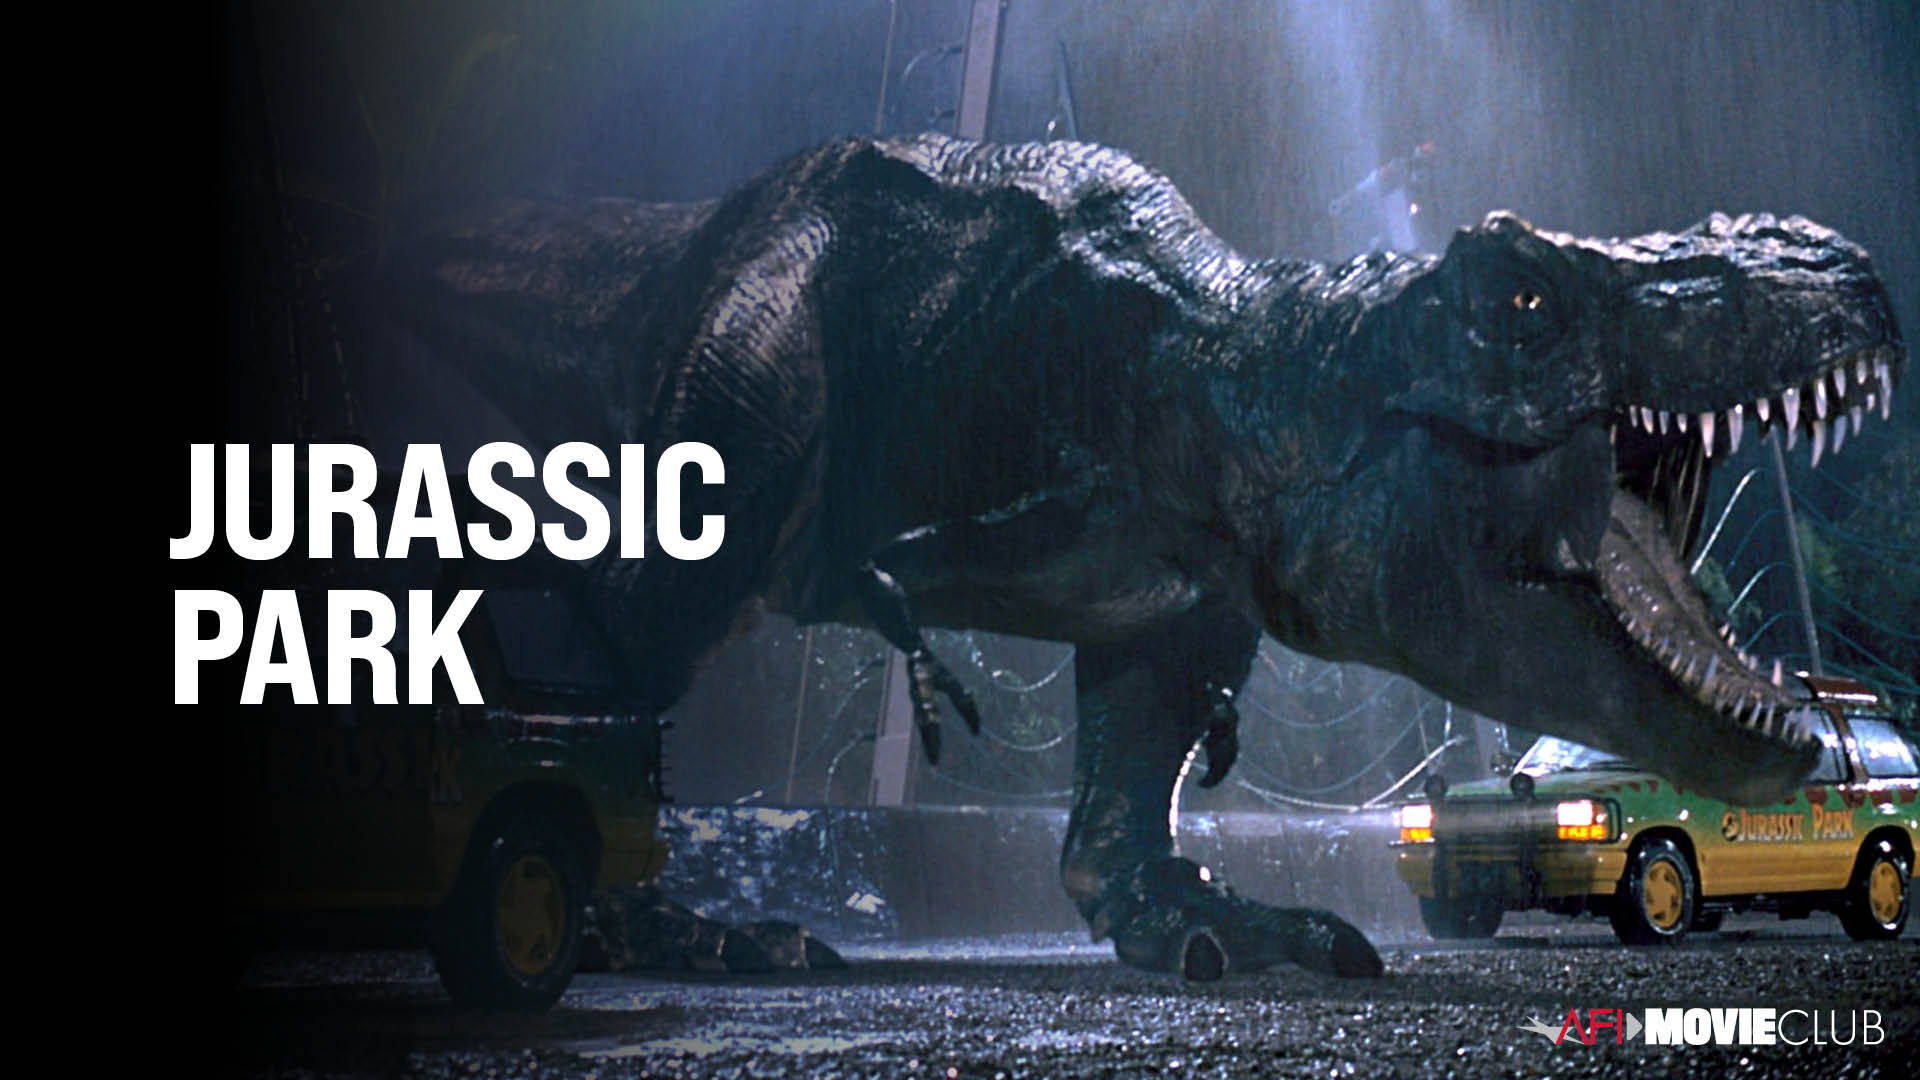 Jurassic Park Film Still